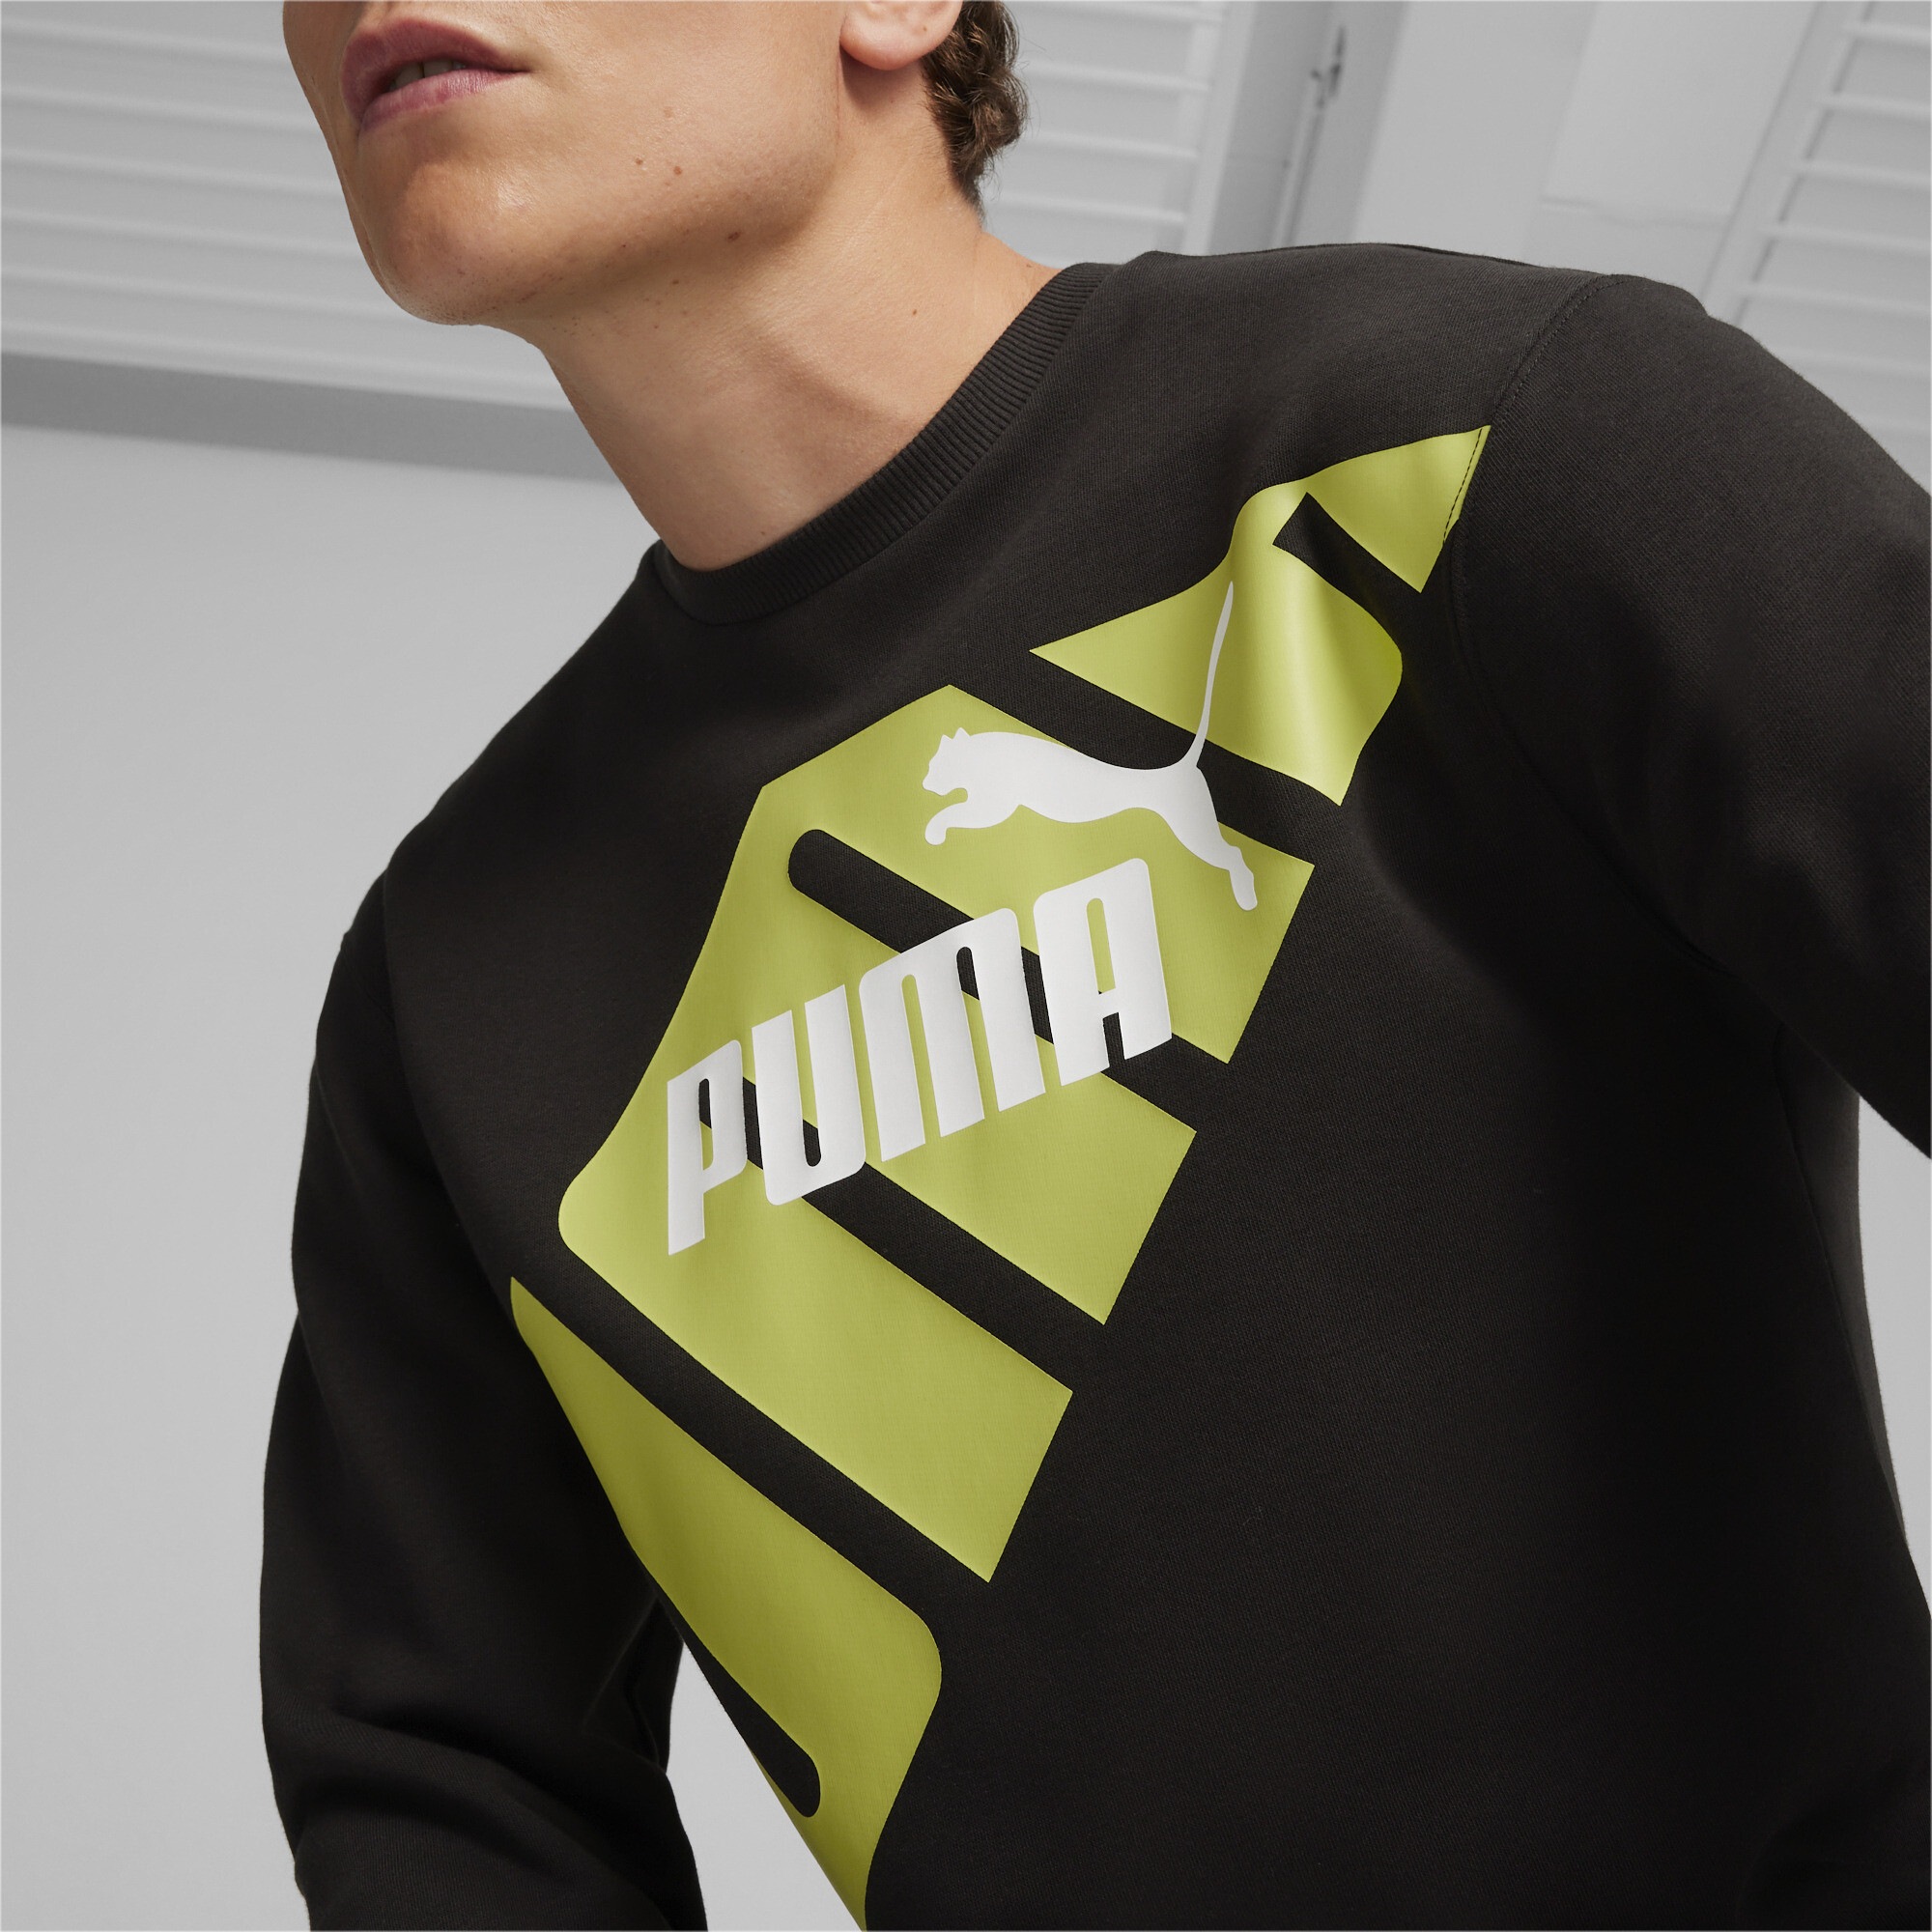 PUMA Sweatshirt »PUMA POWER Graphic Sweatshirt Herren«